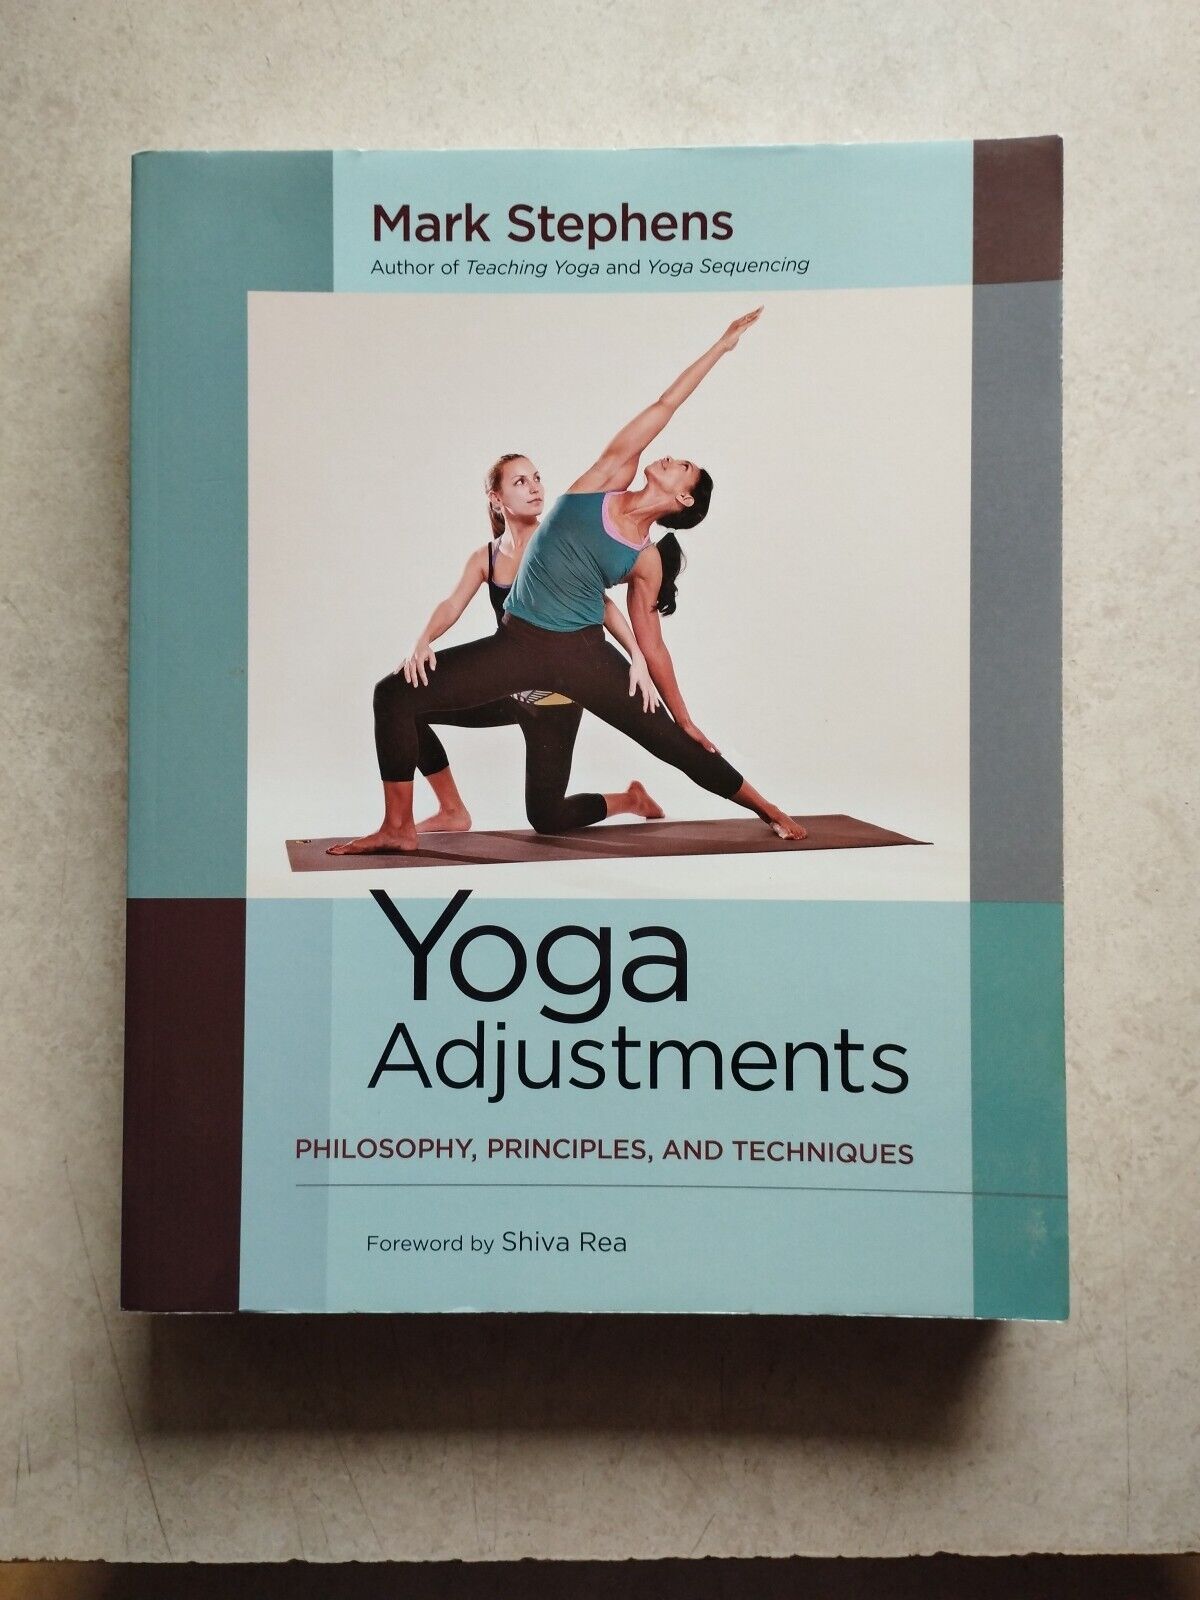 Mark Stephens - Author & Yoga Teacher - Mark Stephens Yoga